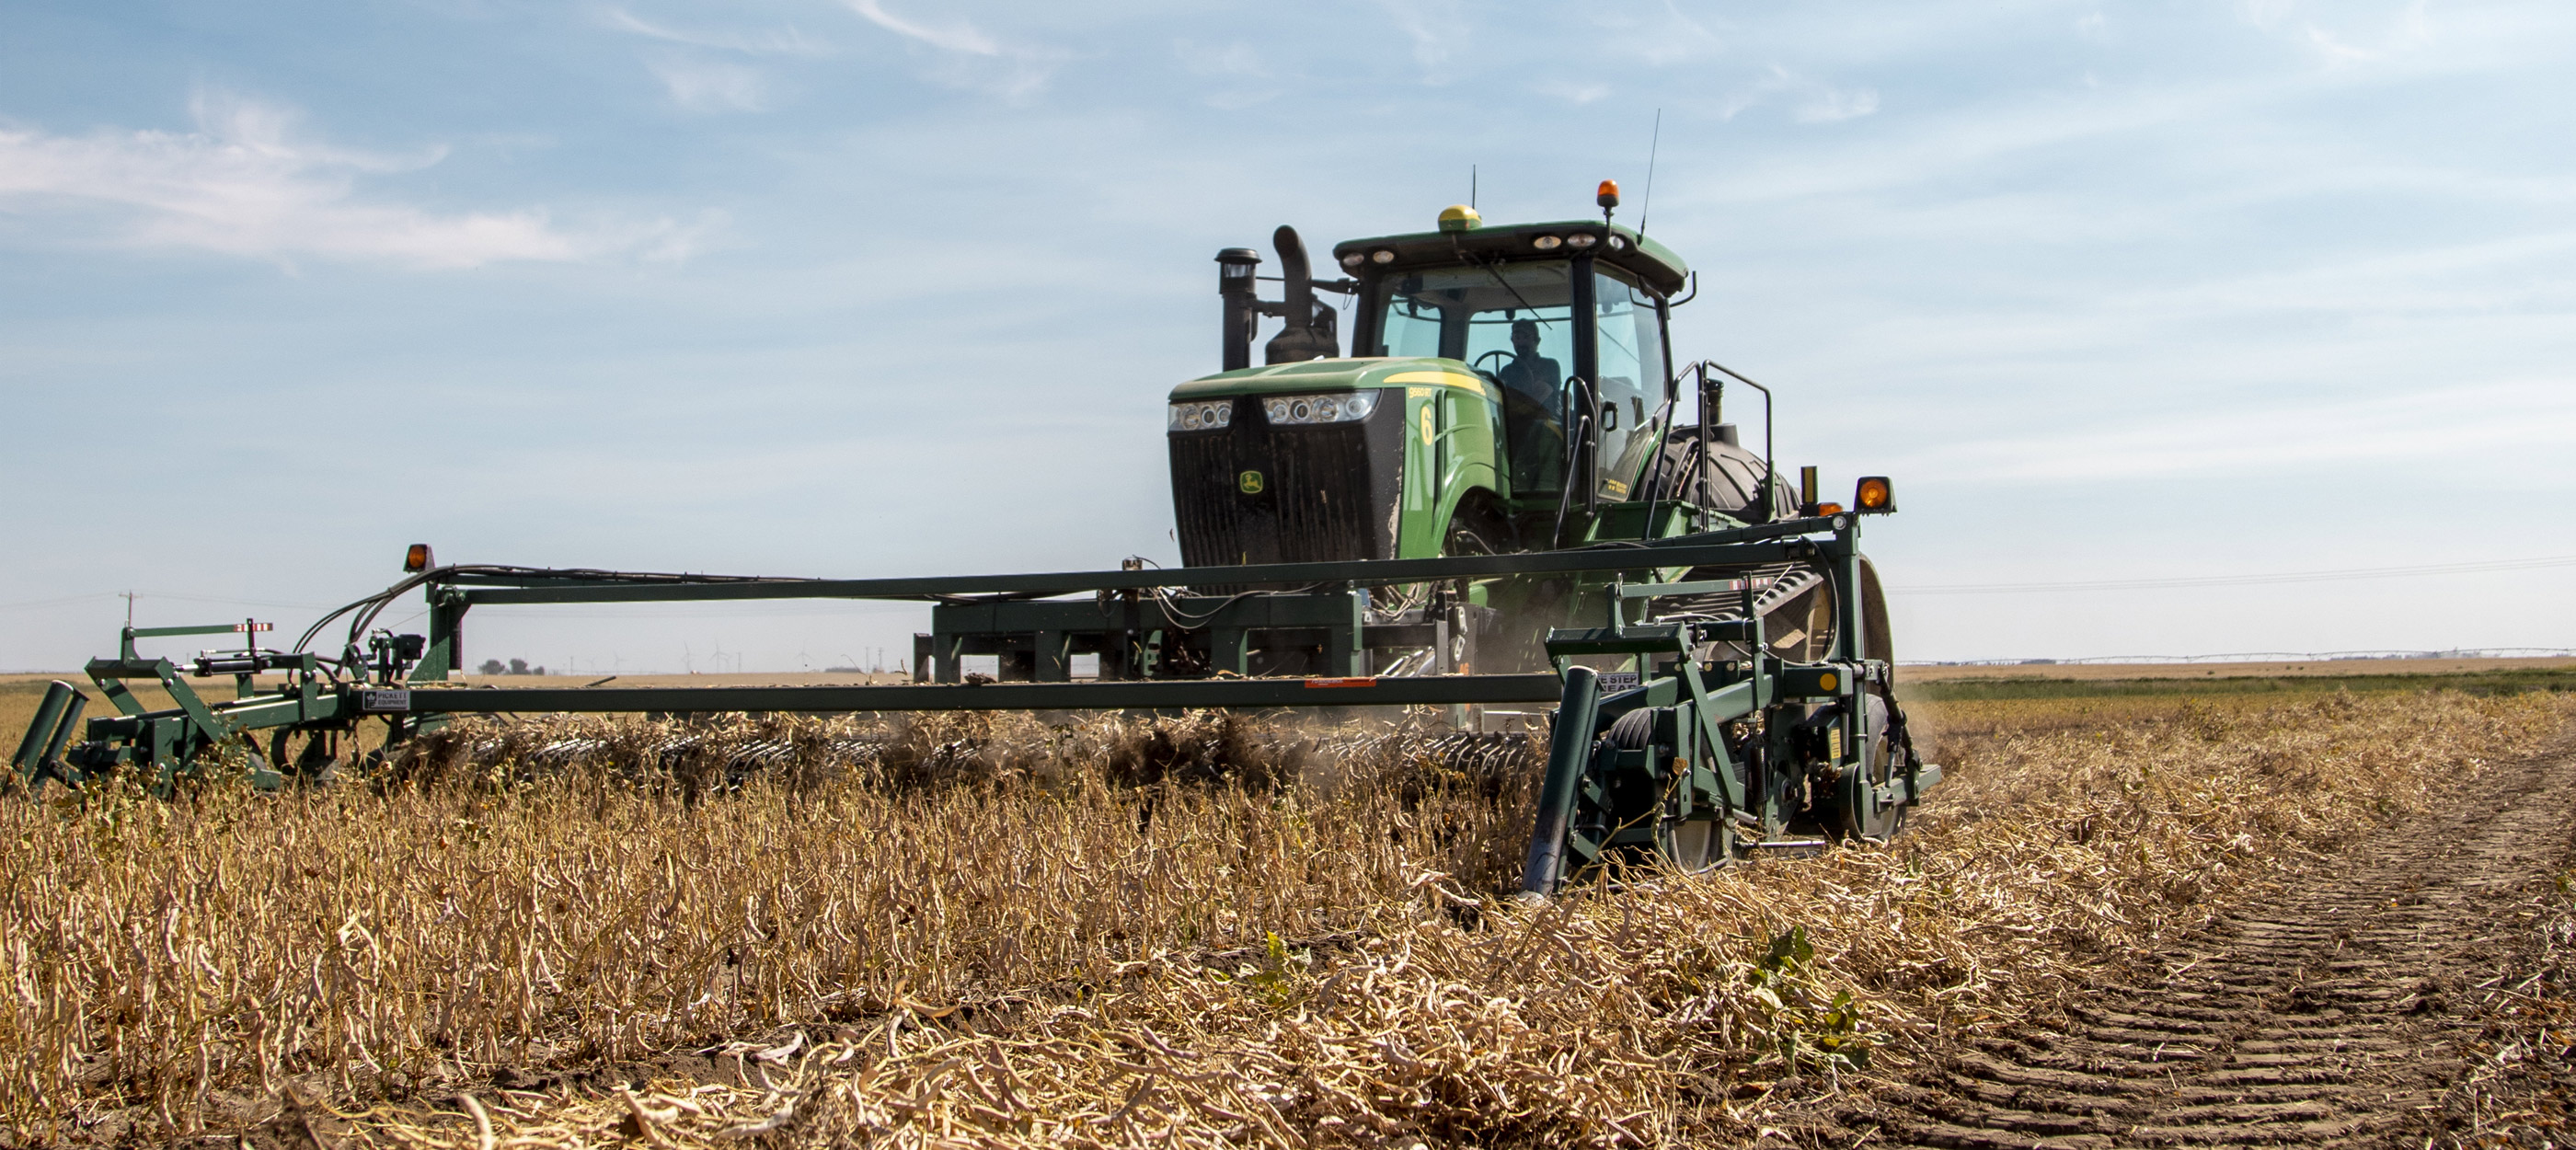 Tracteur agricole dans un champ de blé